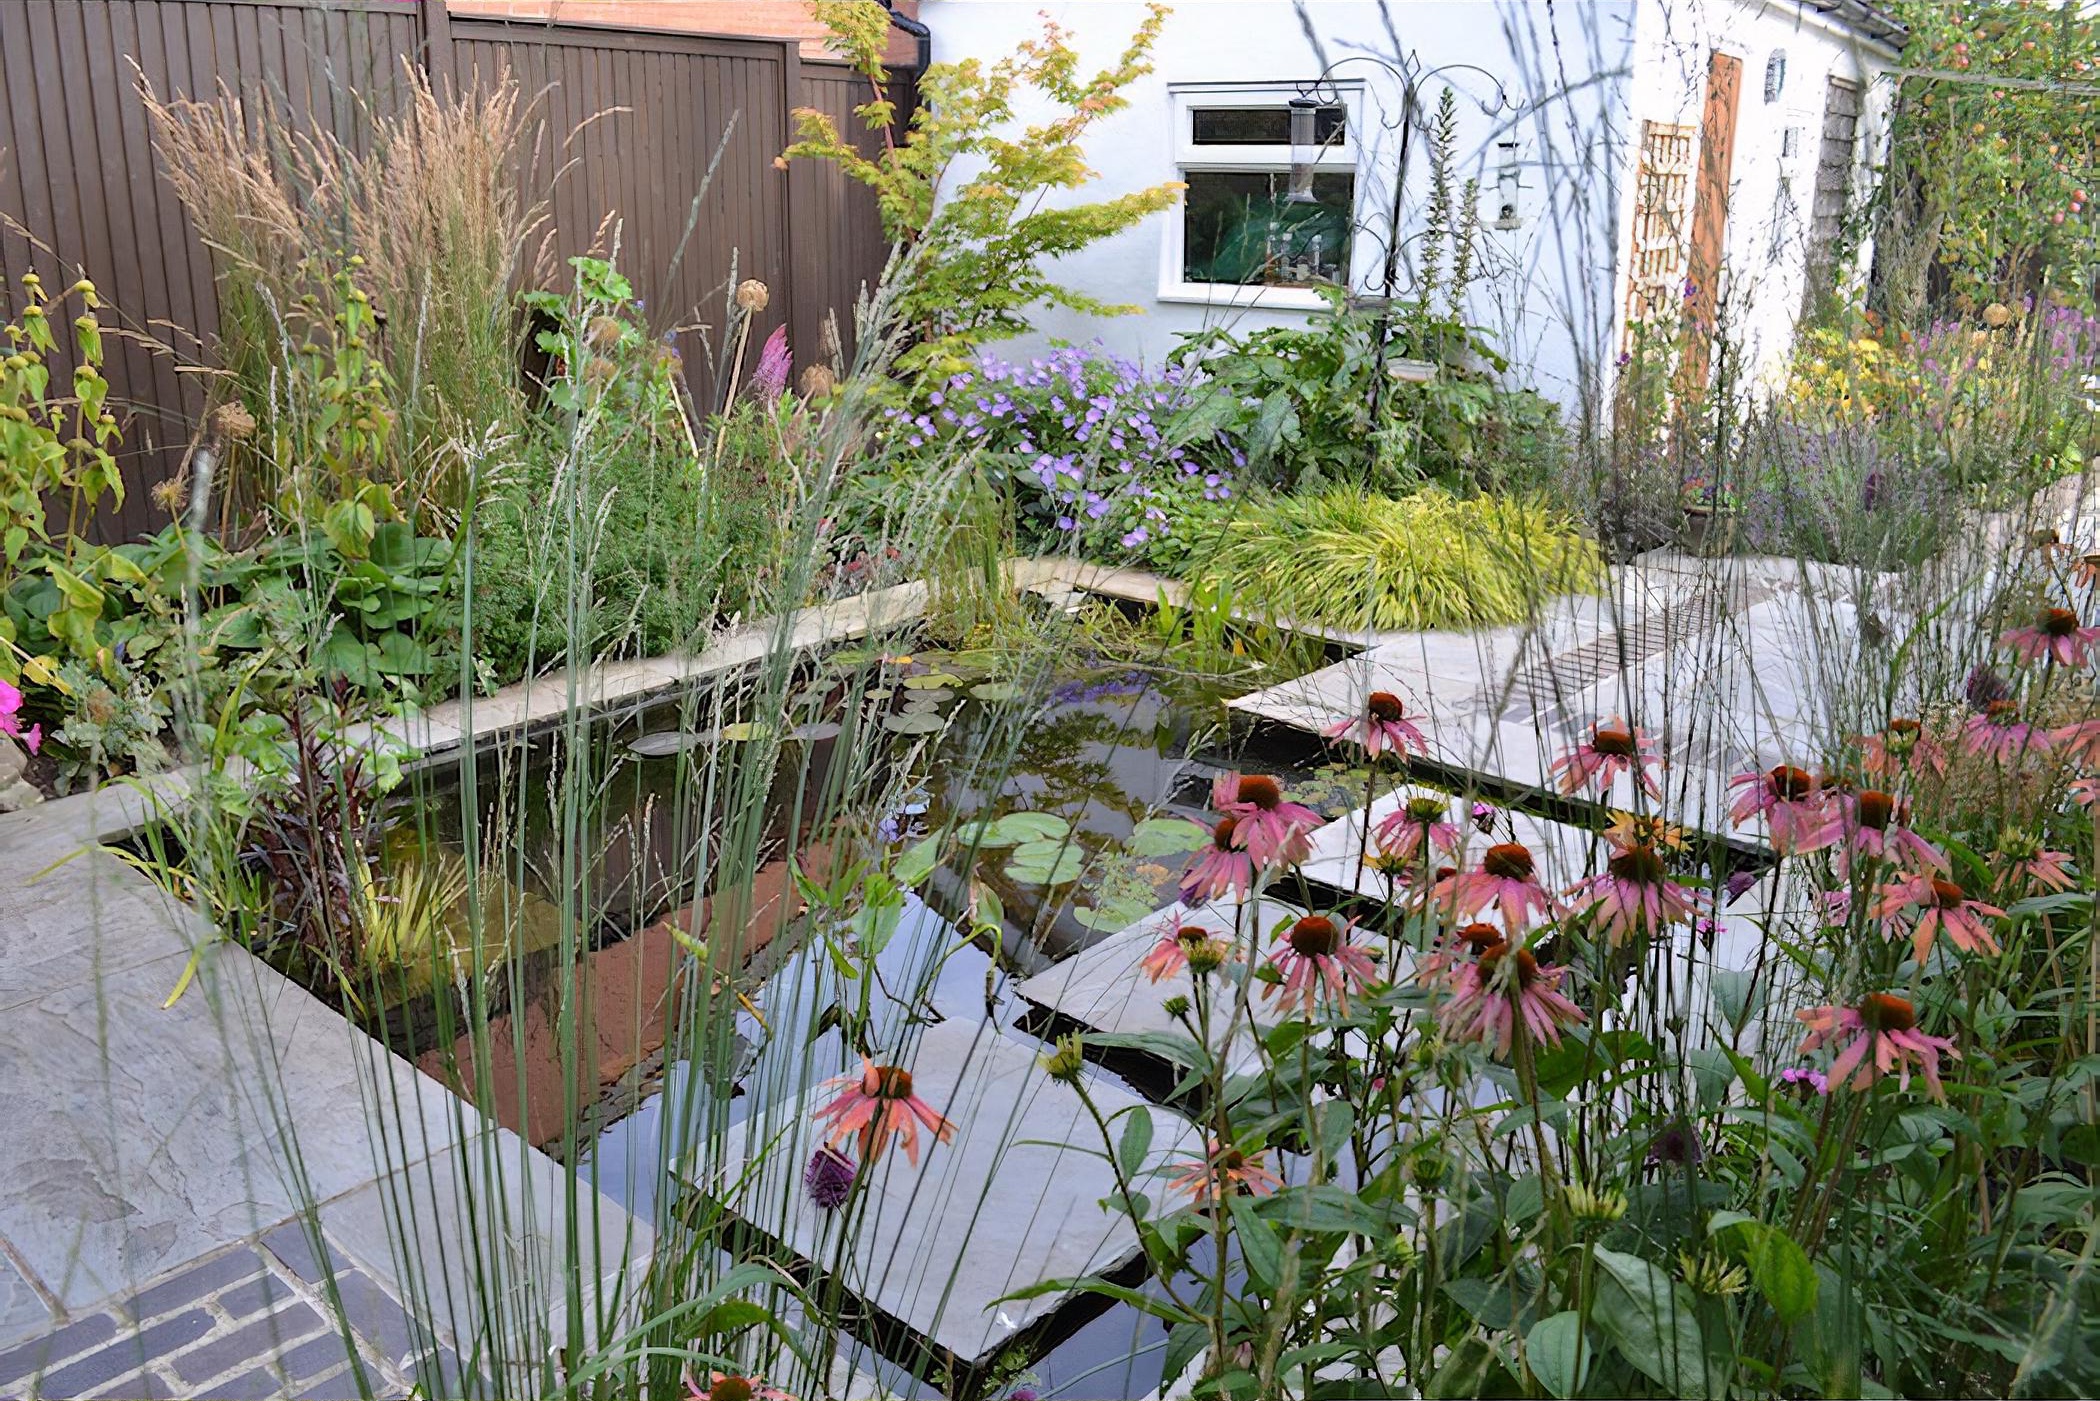 Contemporary Wildlife Garden by West Yorkshire based garden designer Tracy Foster